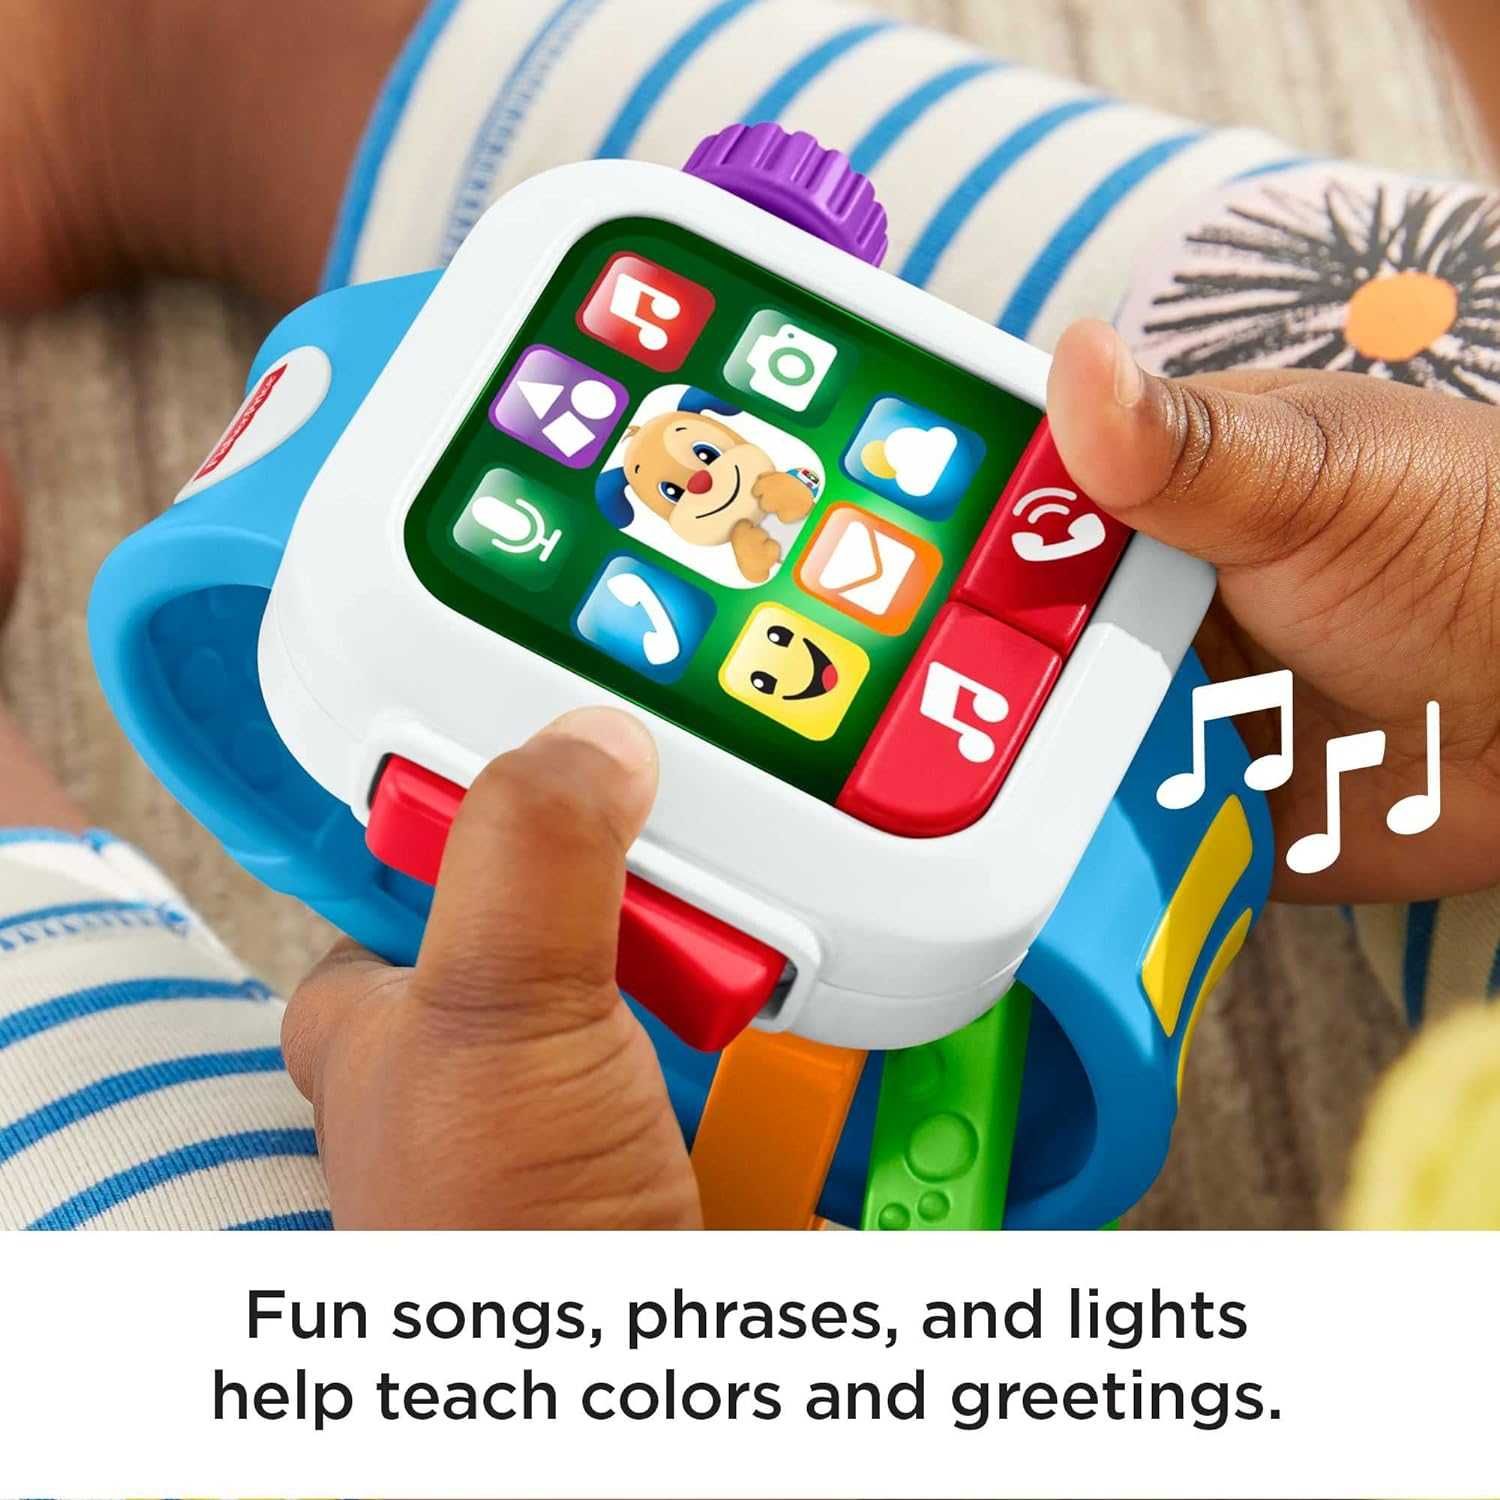 Fisher-Price Музыкальные игрушечные смарт часы (Возраст от 6 месяцев)